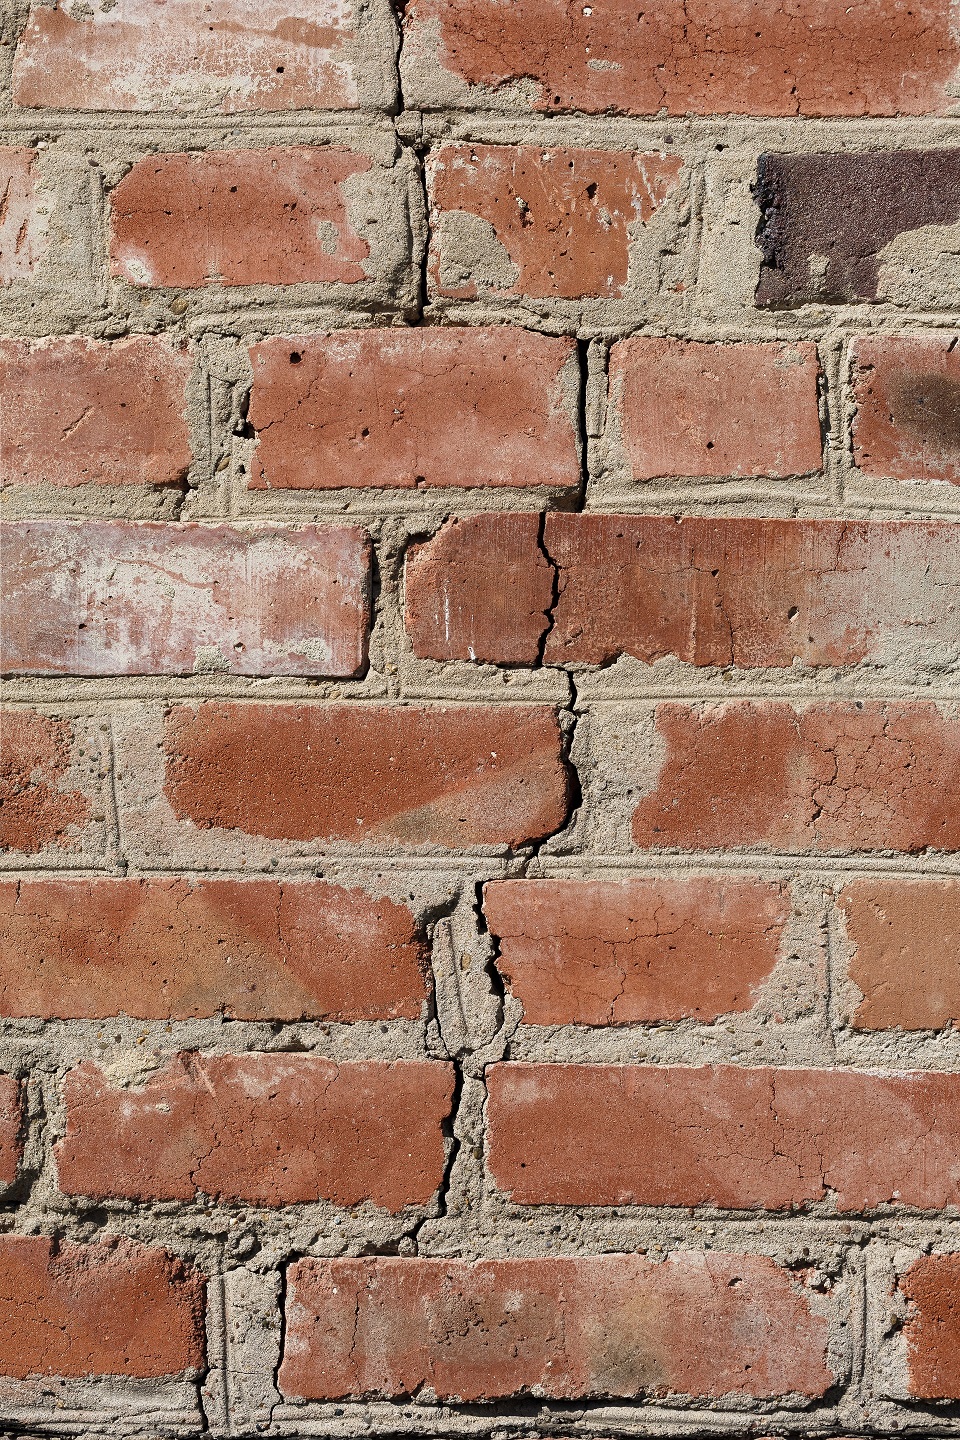 Cracks In Buildings, cracks in walls,